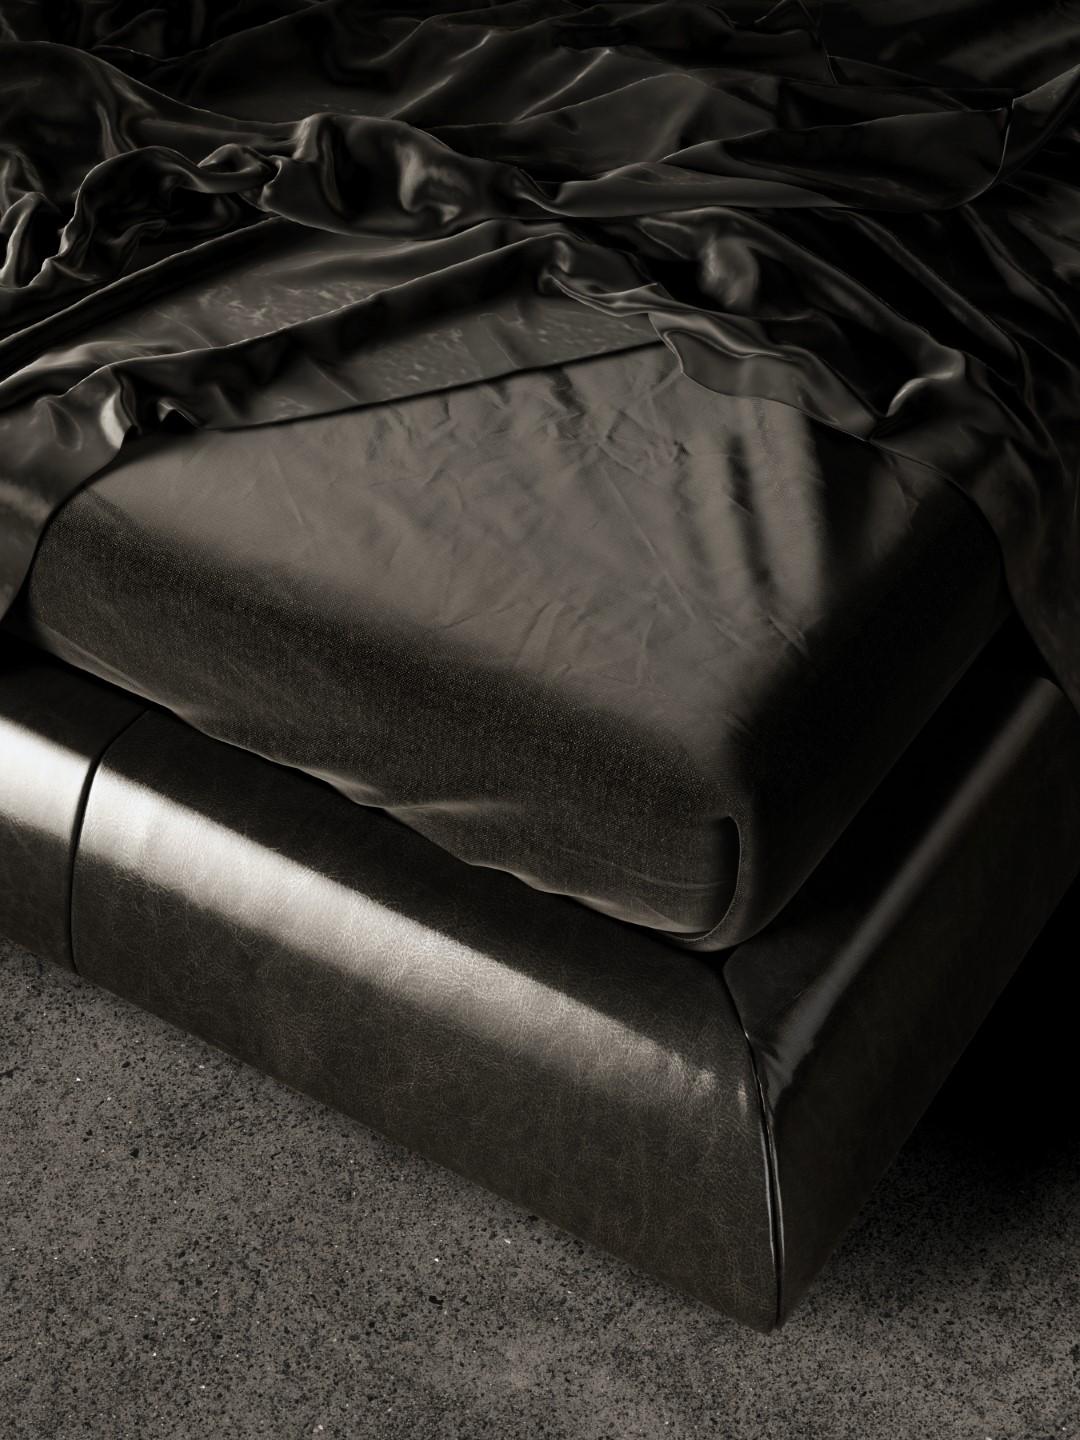 Voyage d'Une Nuit ist ein Bett mit einem freistehenden Kopfteil aus einer Holzschale, die mit Polyurethanschaum unterschiedlicher Dichte und einer Oberflächenschicht aus Acrylfaser überzogen ist. 
Das Kopfteil zeichnet sich durch ein vertikal